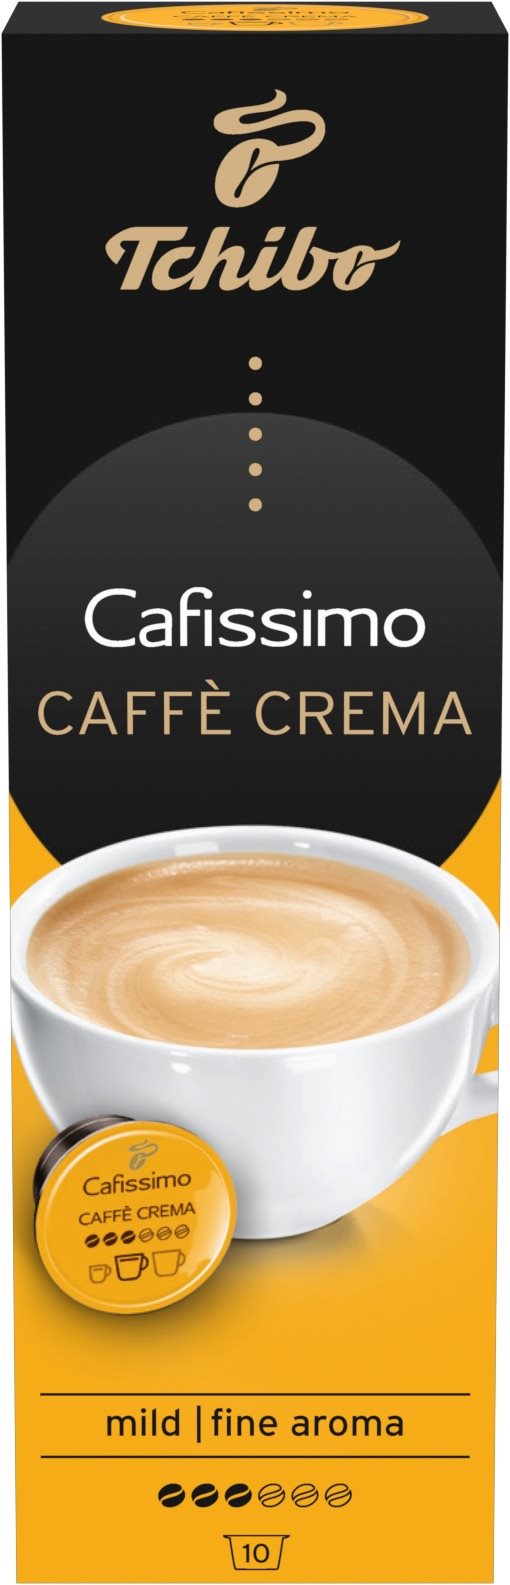 Tchibo Cafissimo Caffé Crema Fine Aroma 70g